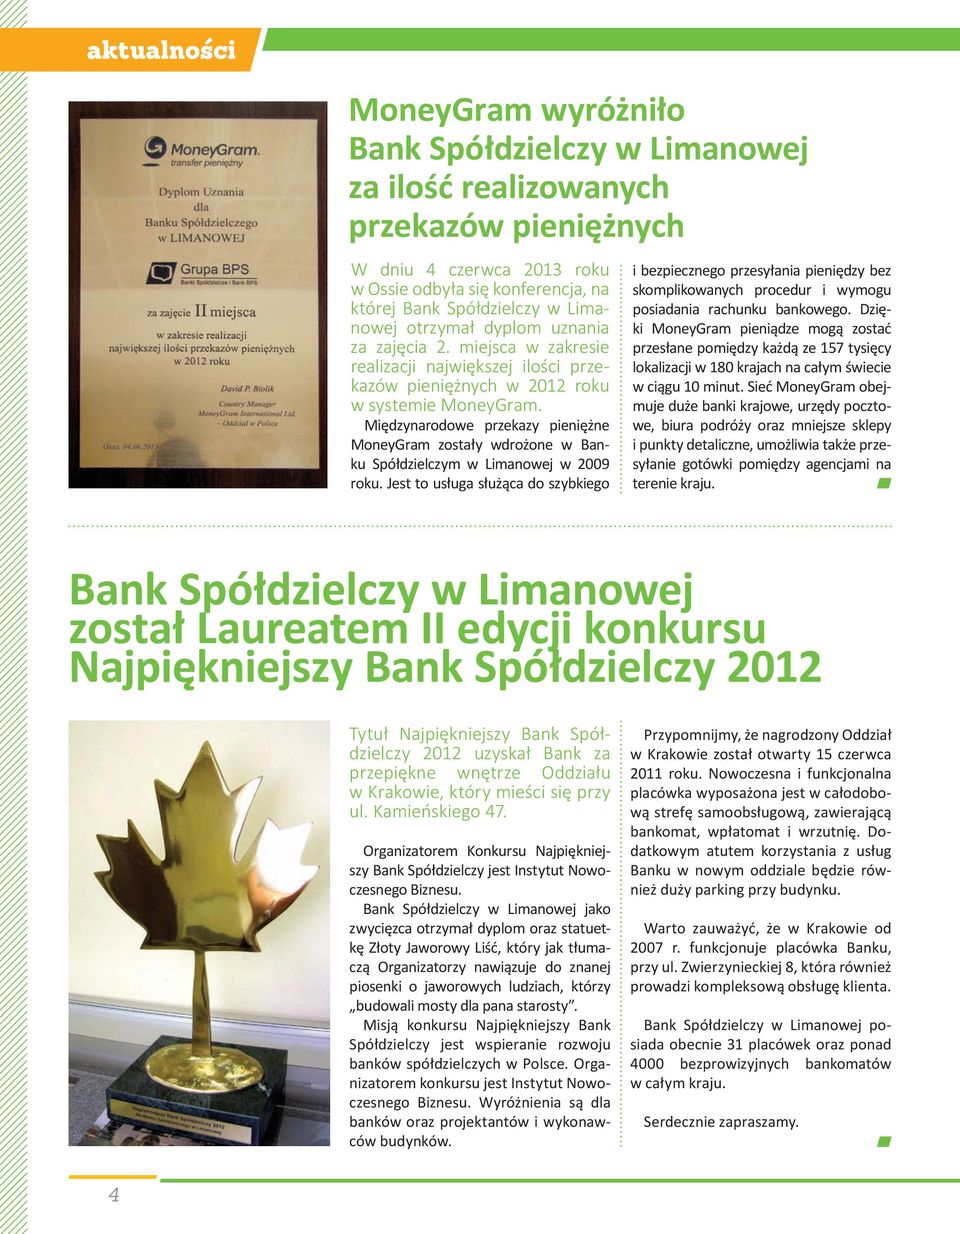 Międzynarodowe przekazy pieniężne MoneyGram zostały wdrożone w Banku Spółdzielczym w Limanowej w 2009 roku.